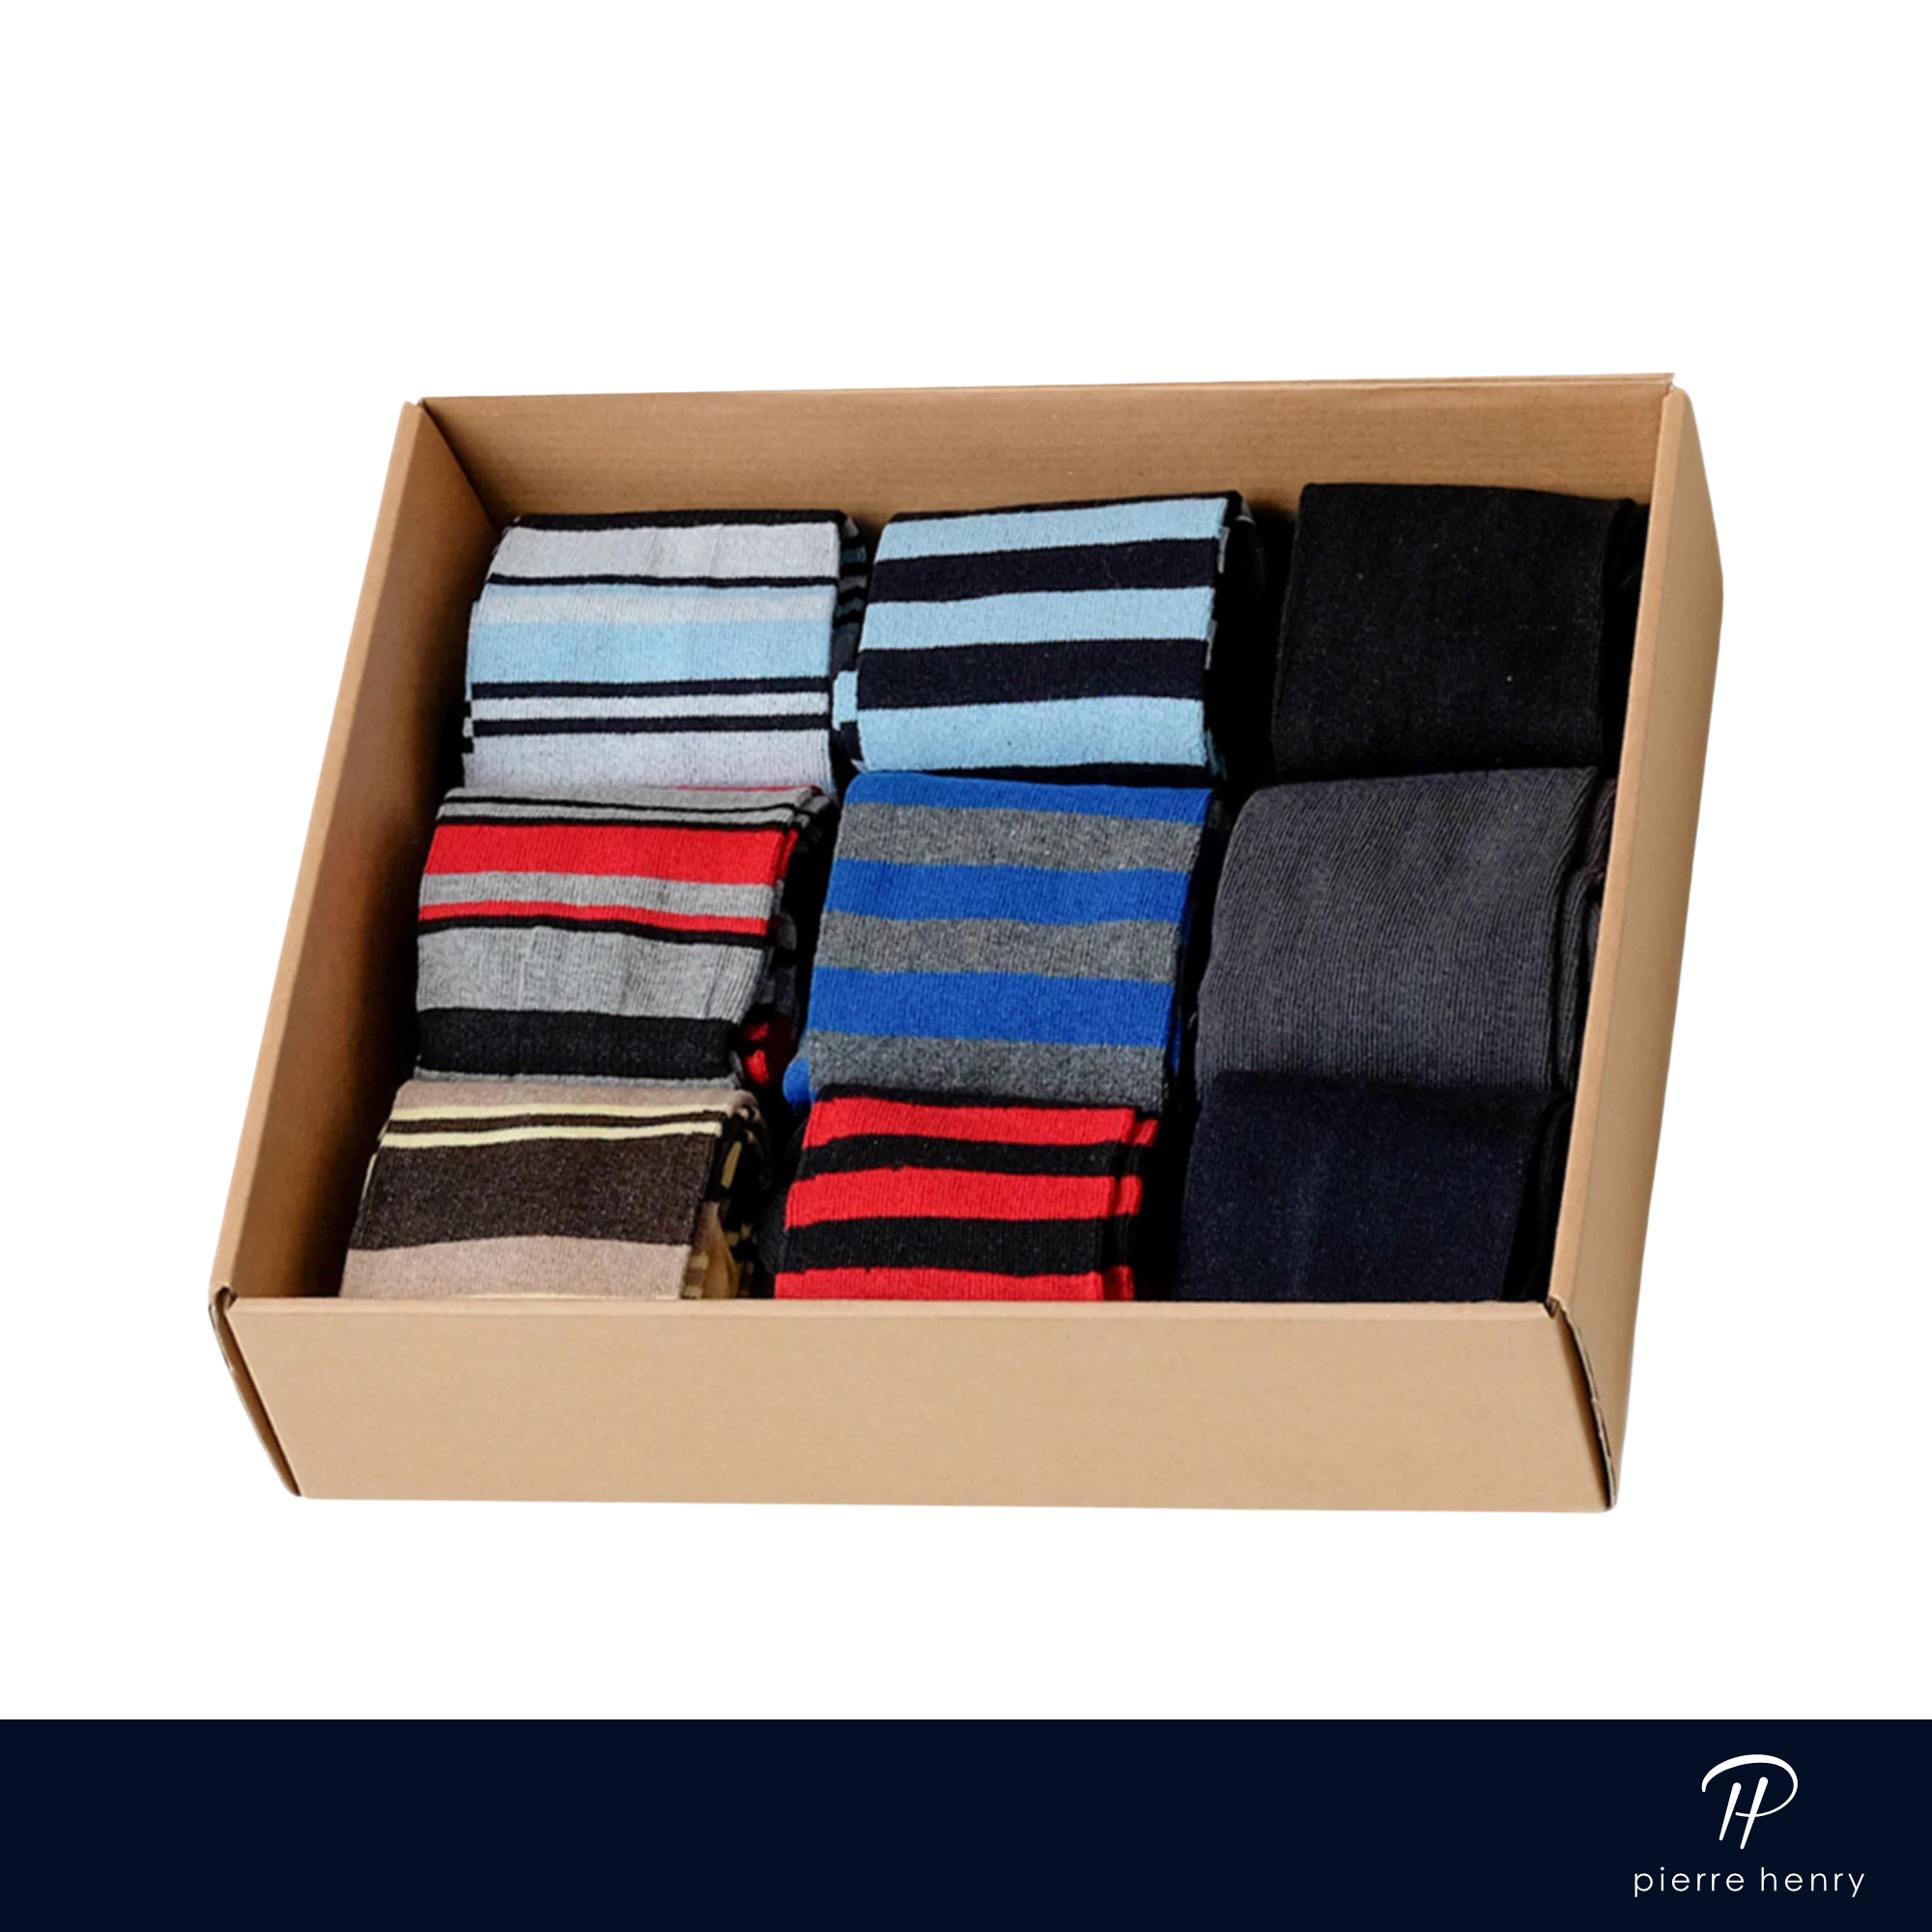 box of dress socks for men, light blue dress socks, black dress socks, red dress socks, yellow dress socks, striped dress socks, solid dress socks.